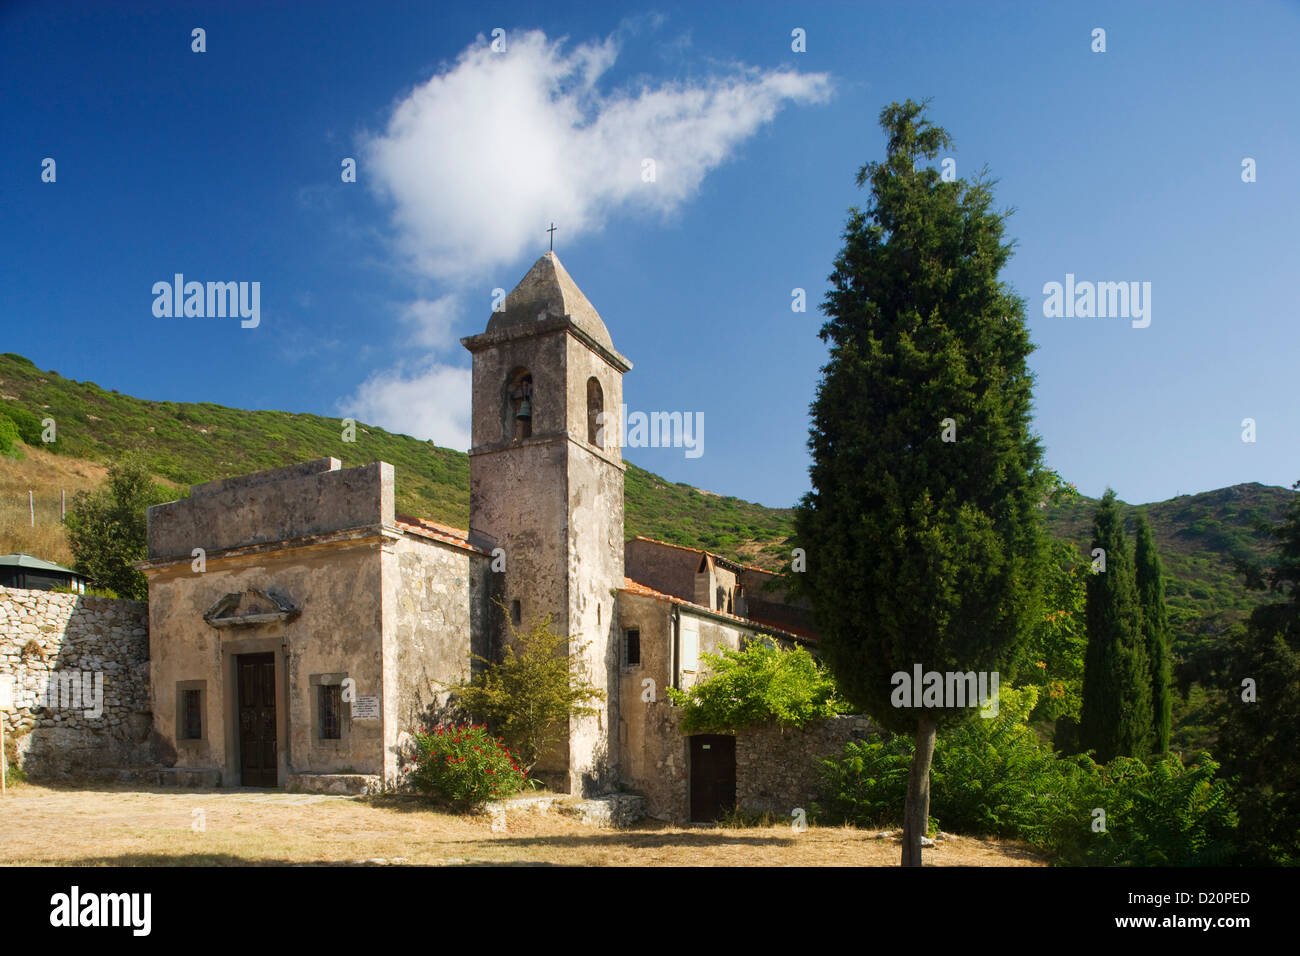 Chiesa nella luce del sole, Eremo di Santa Caterina, Rio nell'Elba, Isola d'Elba, Toscana, Italia, Europa Foto Stock